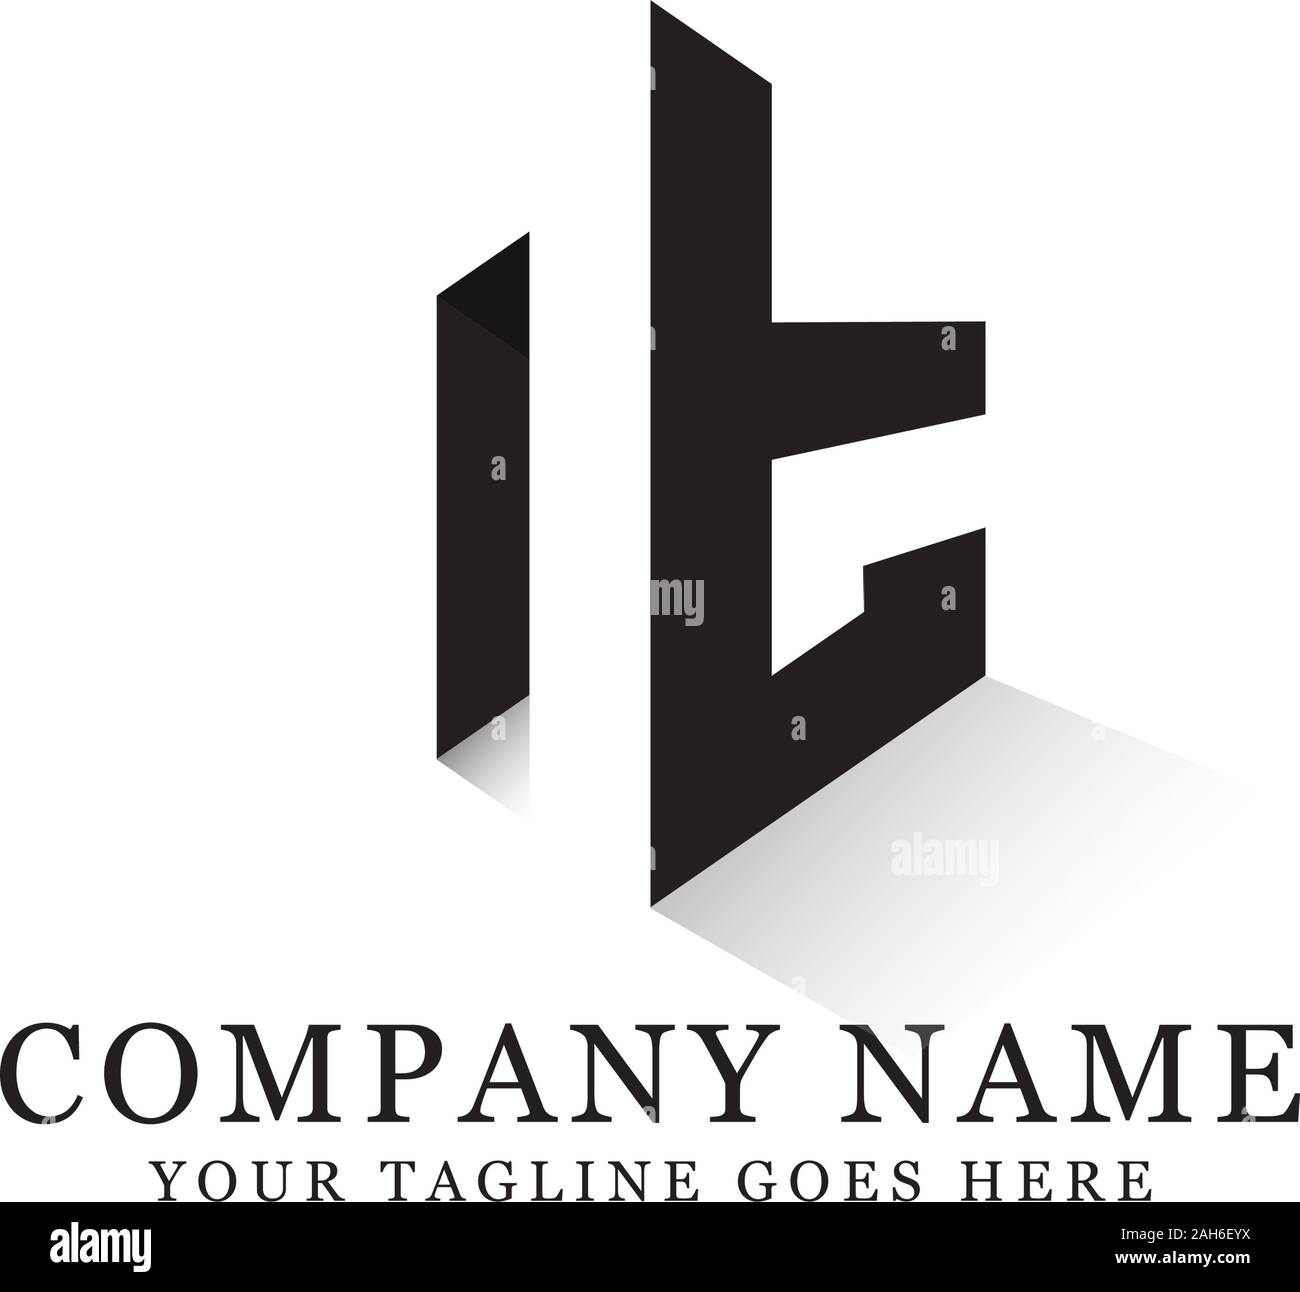 Nt erste Logo inspiration, negativen Raum schreiben Logo Designs Stock Vektor